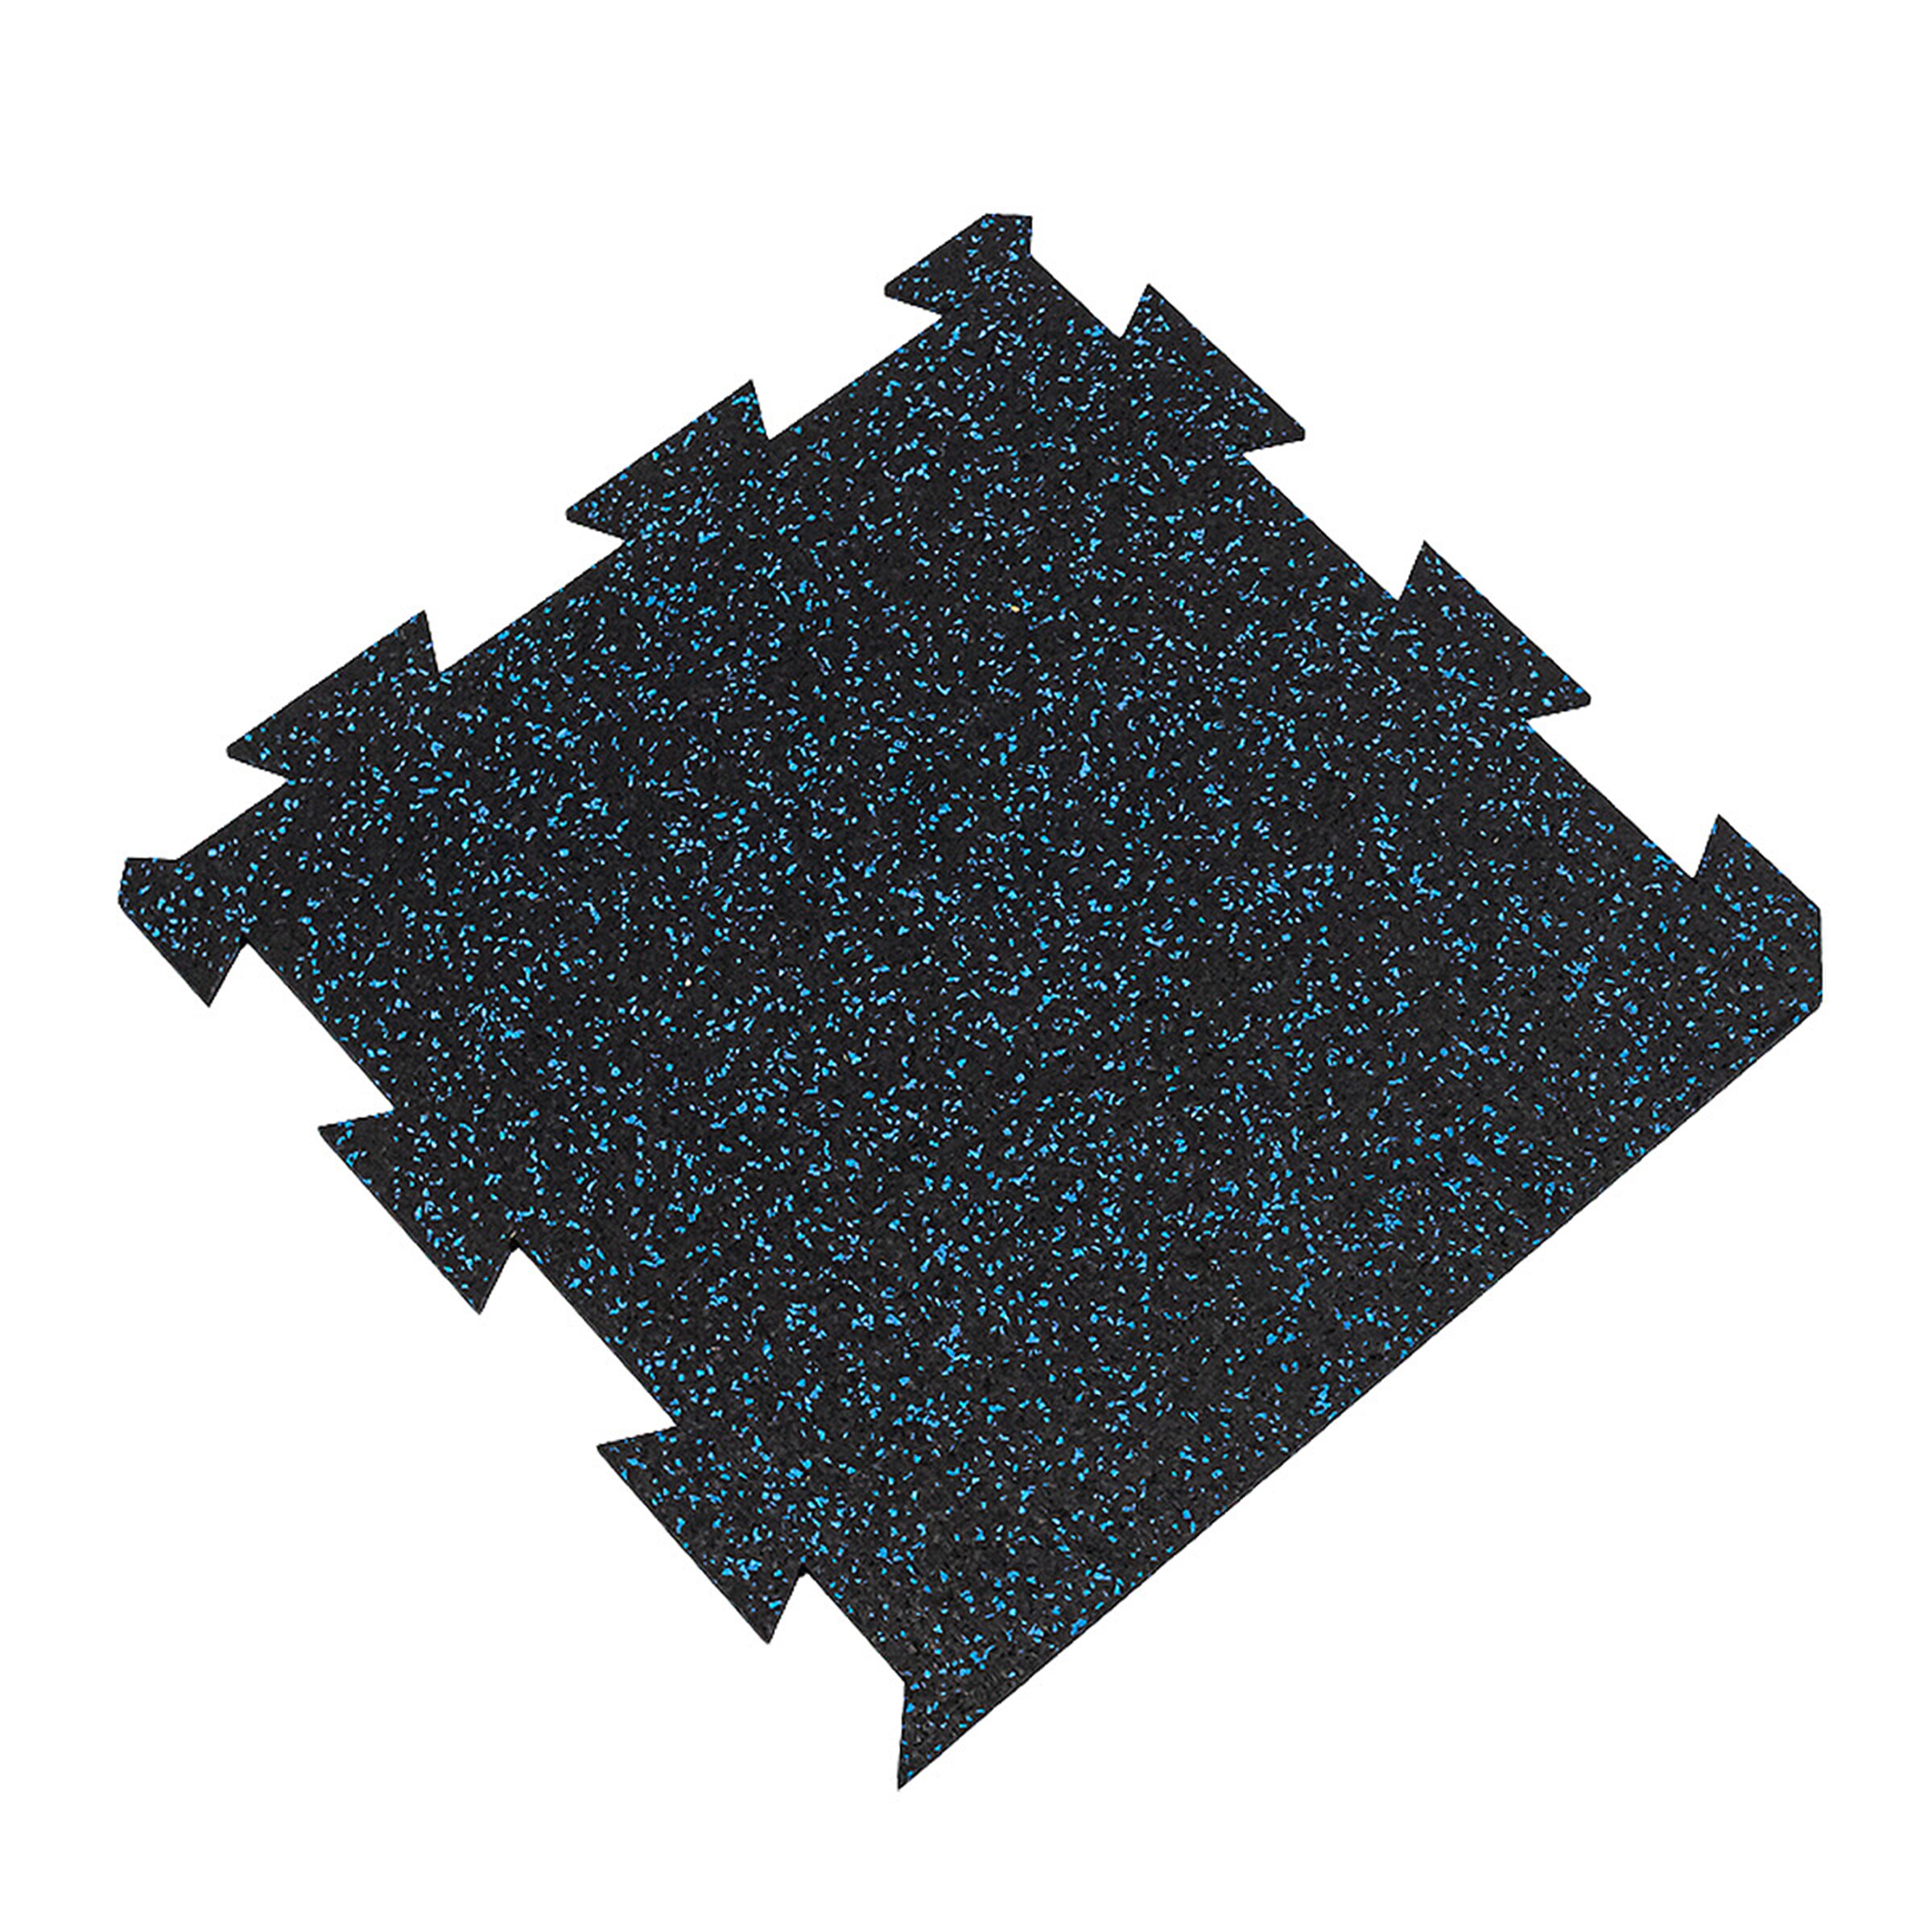 Černo-modrá gumová modulová puzzle dlažba (okraj) FLOMA FitFlo SF1050 - délka 50 cm, šířka 50 cm, výška 0,8 cm